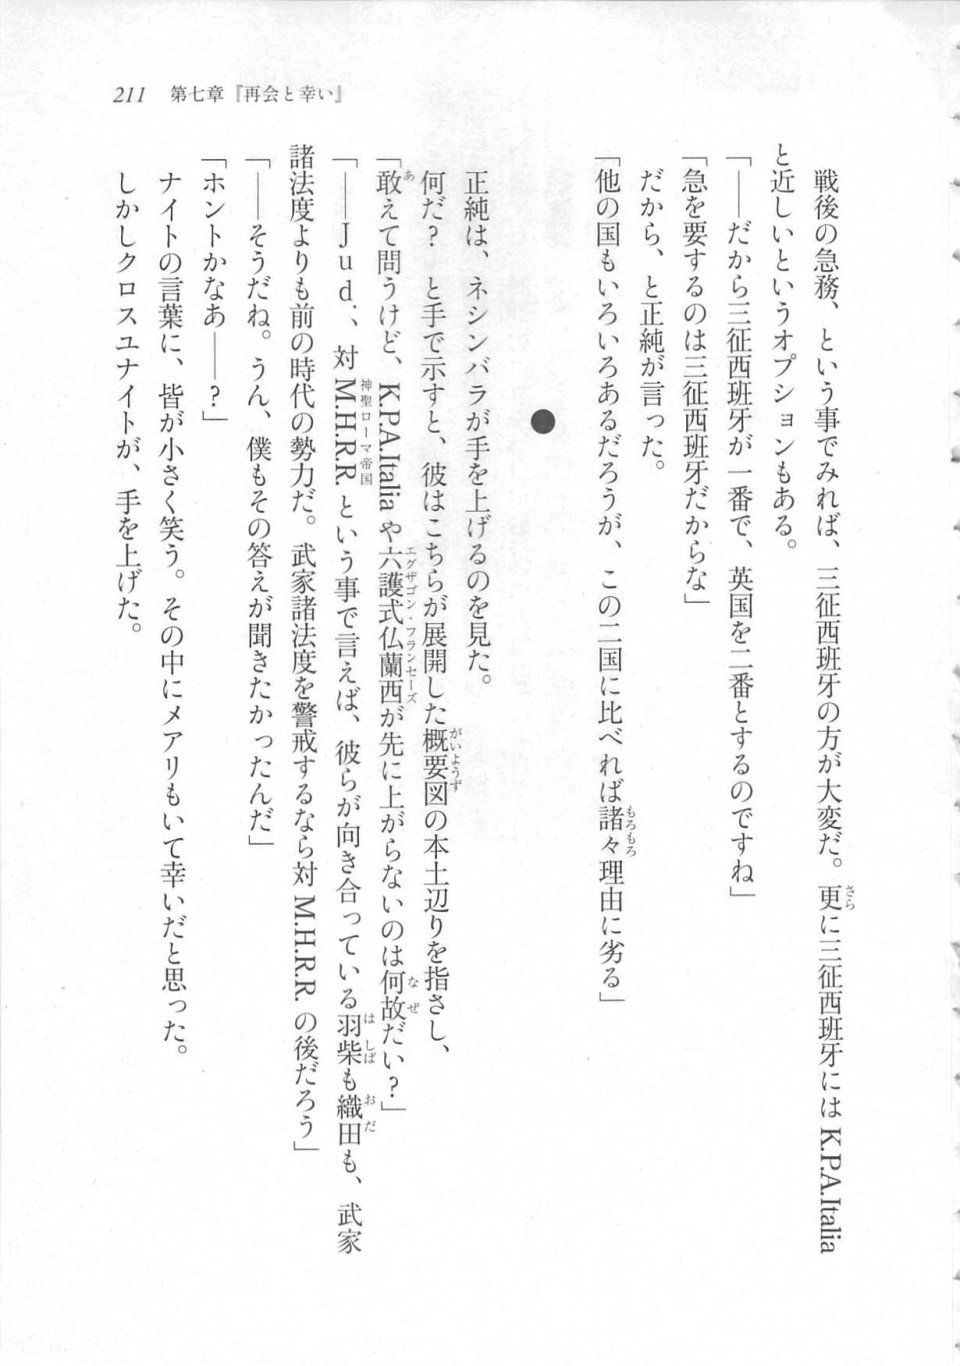 Kyoukai Senjou no Horizon LN Sidestory Vol 3 - Photo #215